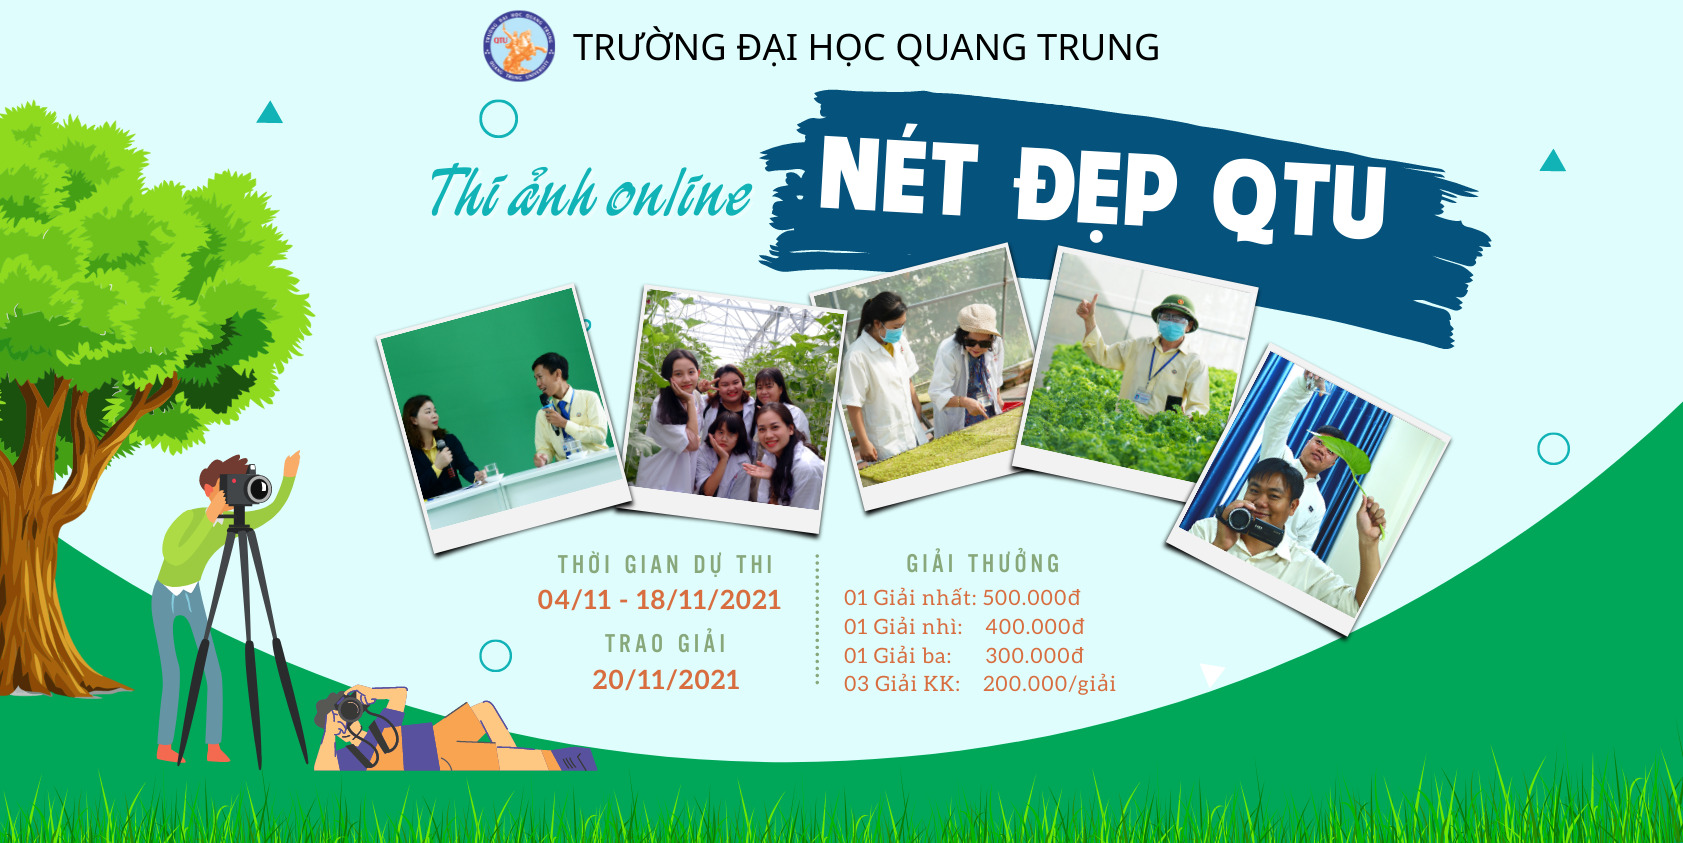 Cuộc thi ảnh online NÉT ĐẸP QTU - Đại học Quang Trung